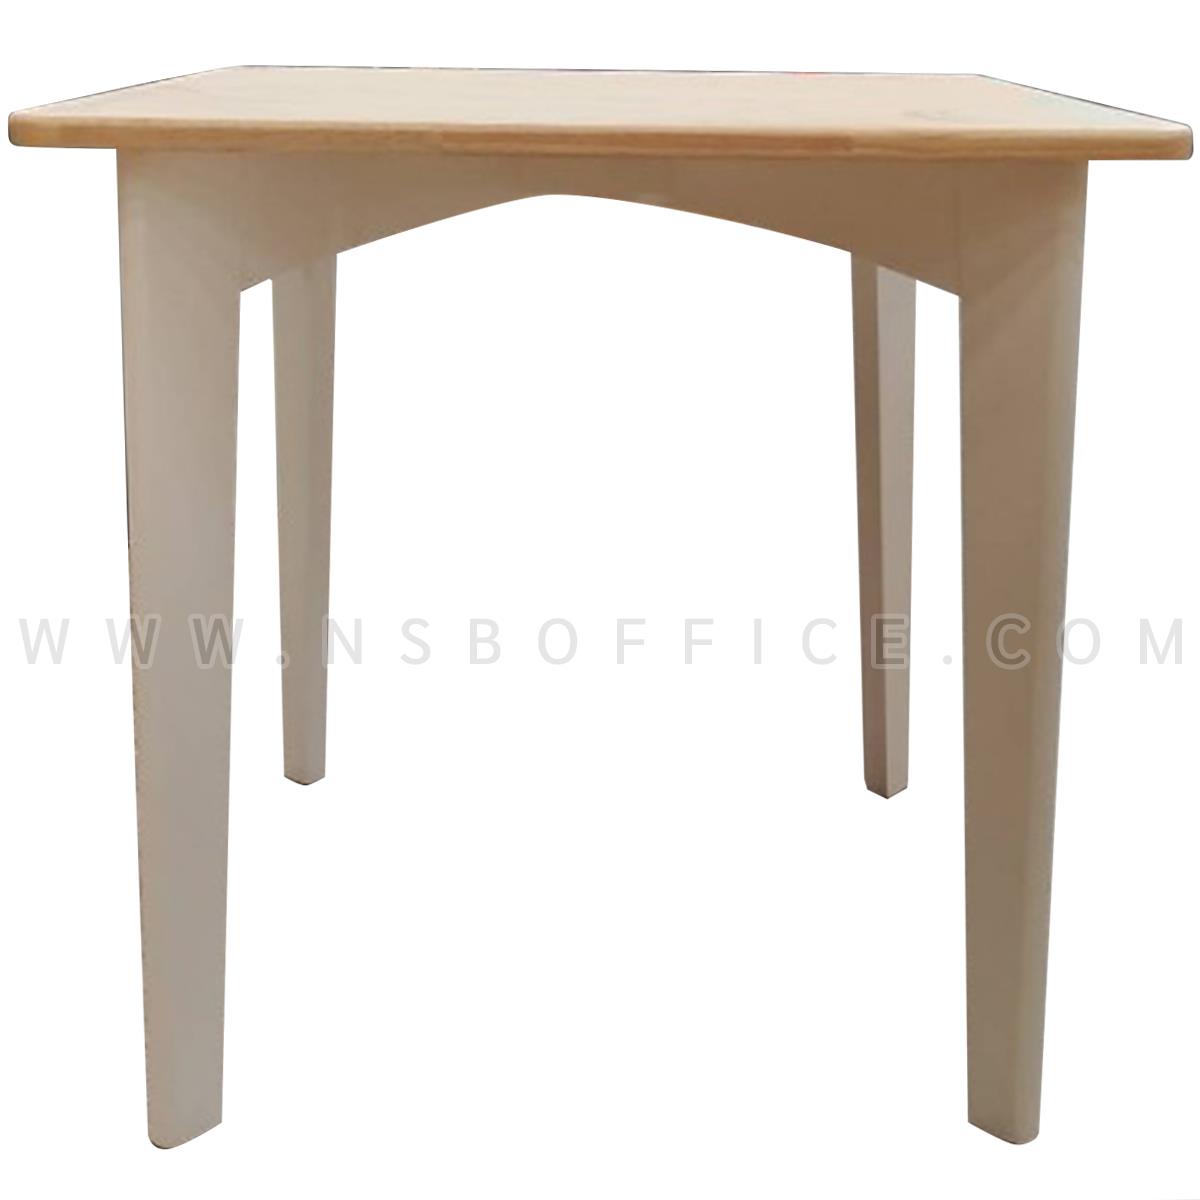 G20A028:โต๊ะไม้ยางพารา รุ่น Mina (มินะ) ขนาด 70W*70D cm. 